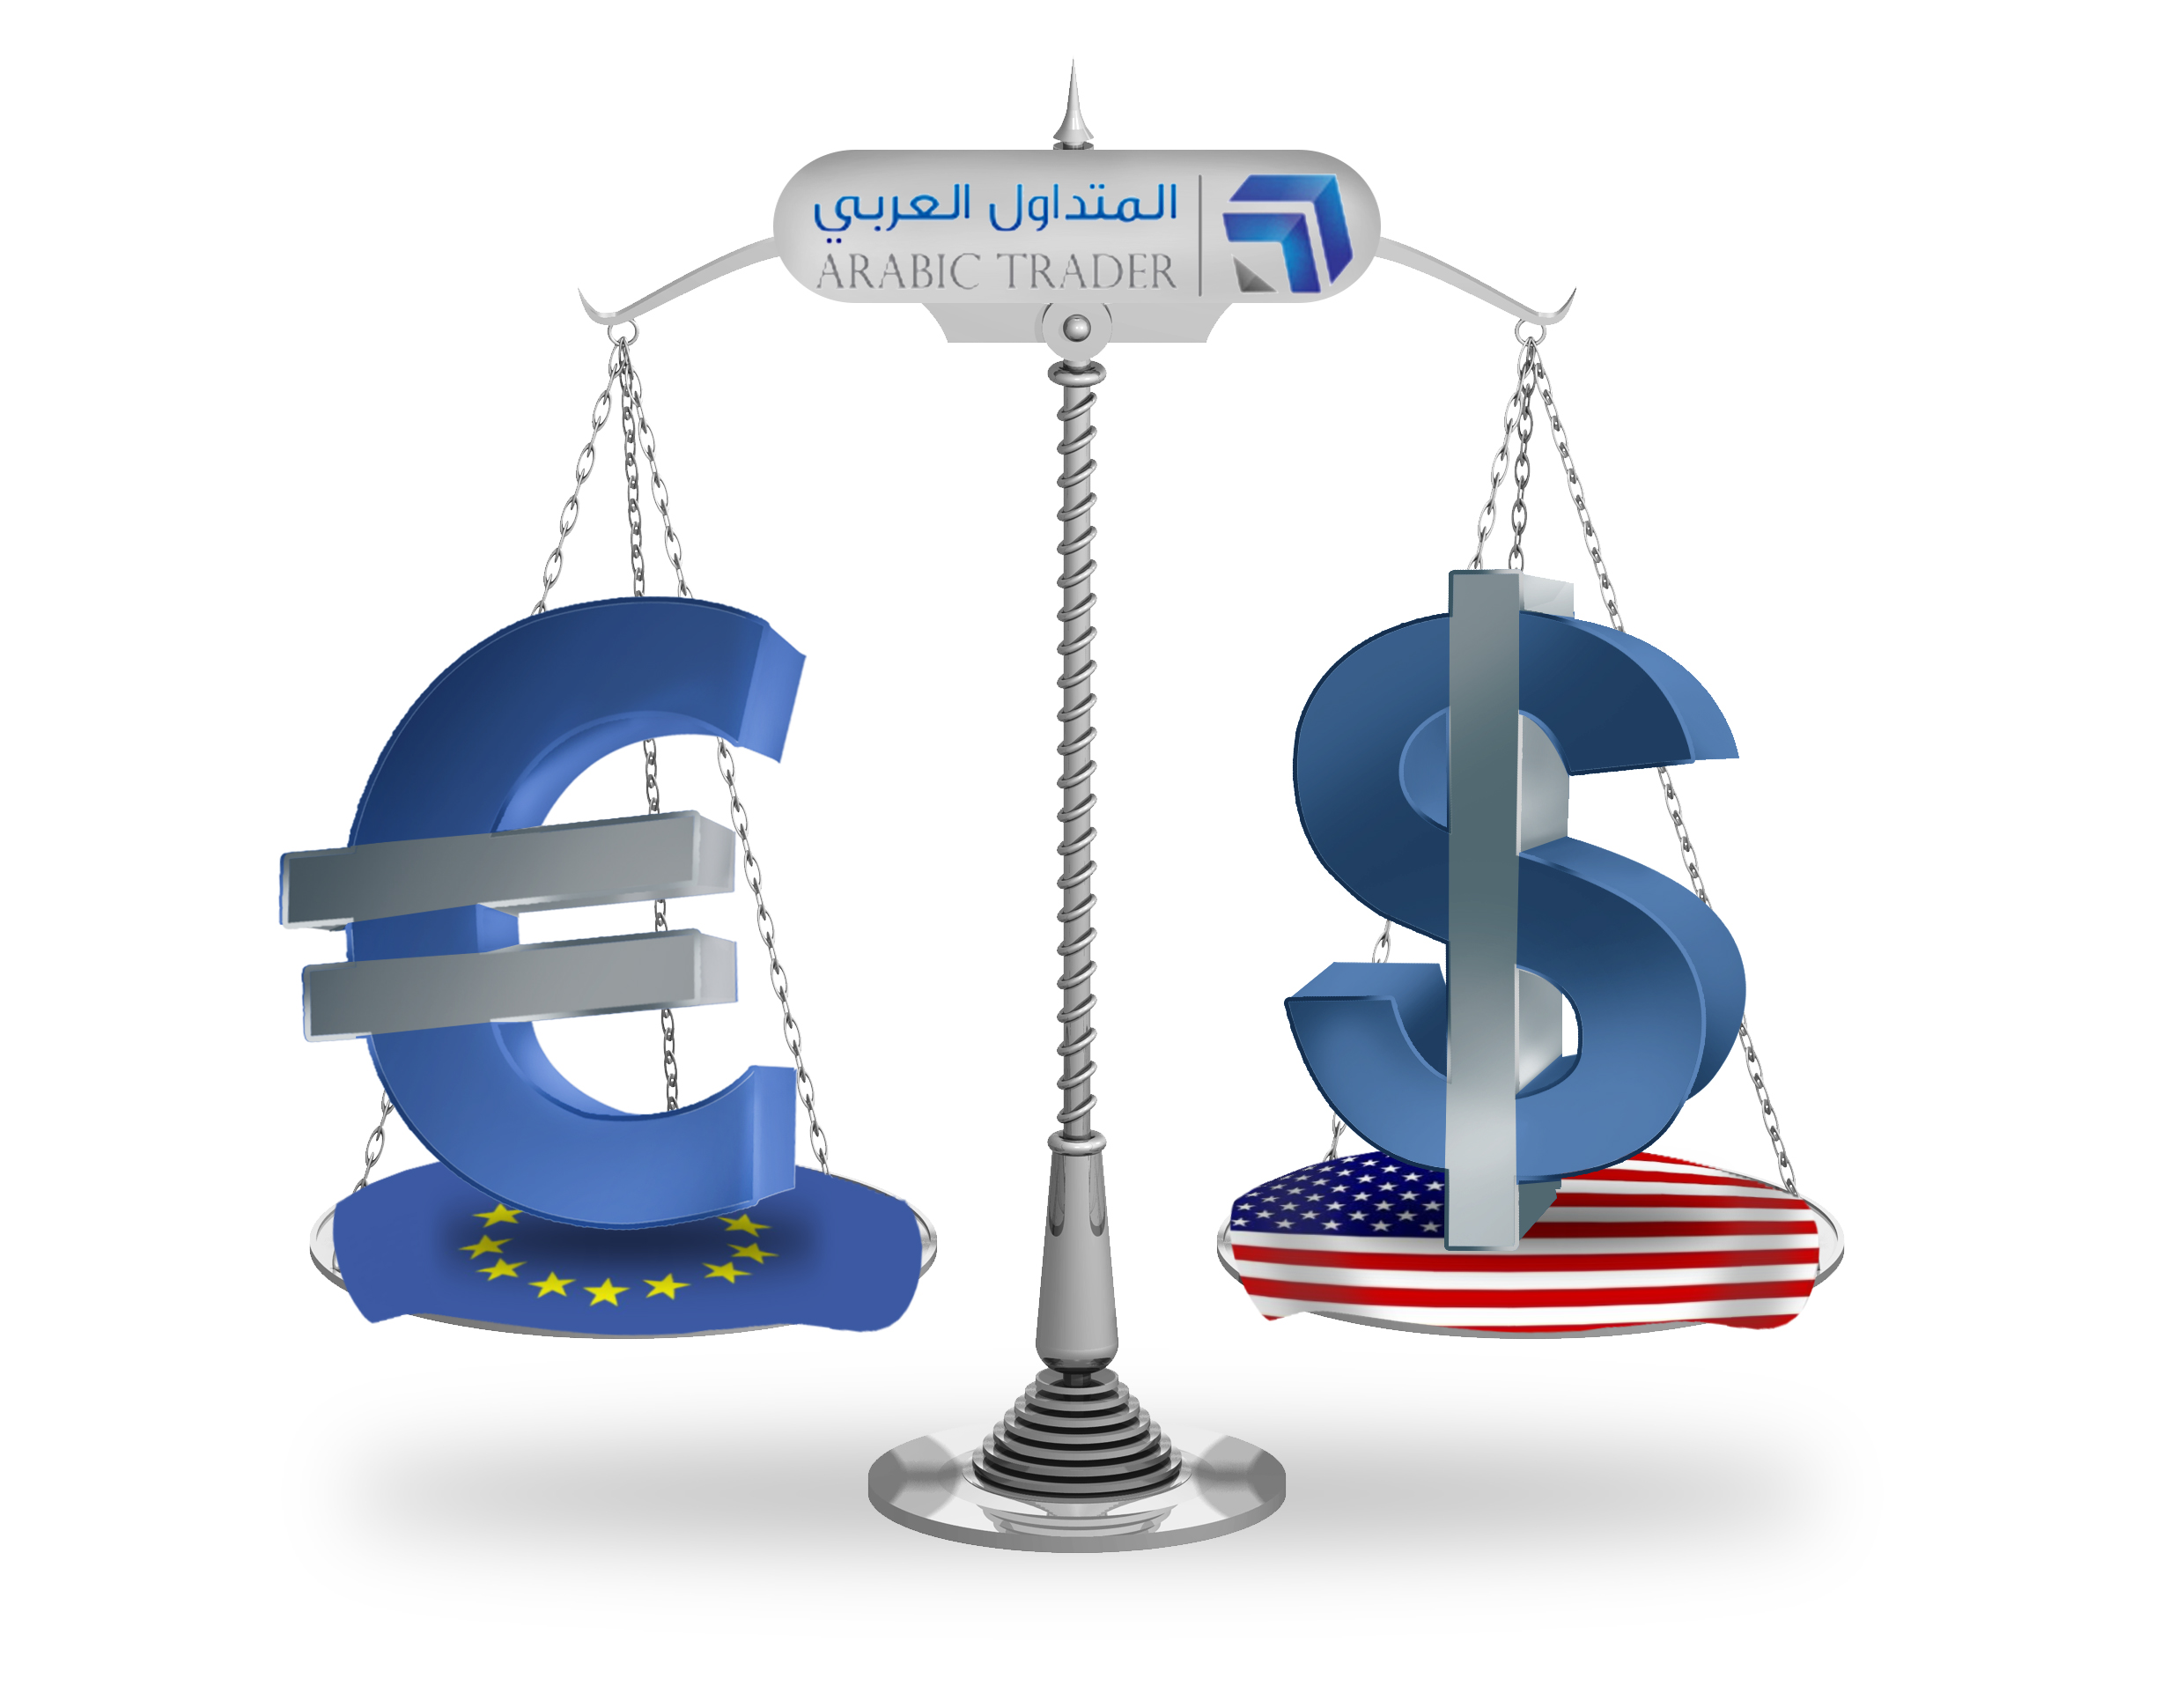 اليورو دولار EURUSD يختبر دعم مهم وحاسم لتداوله الفترة المقبلة